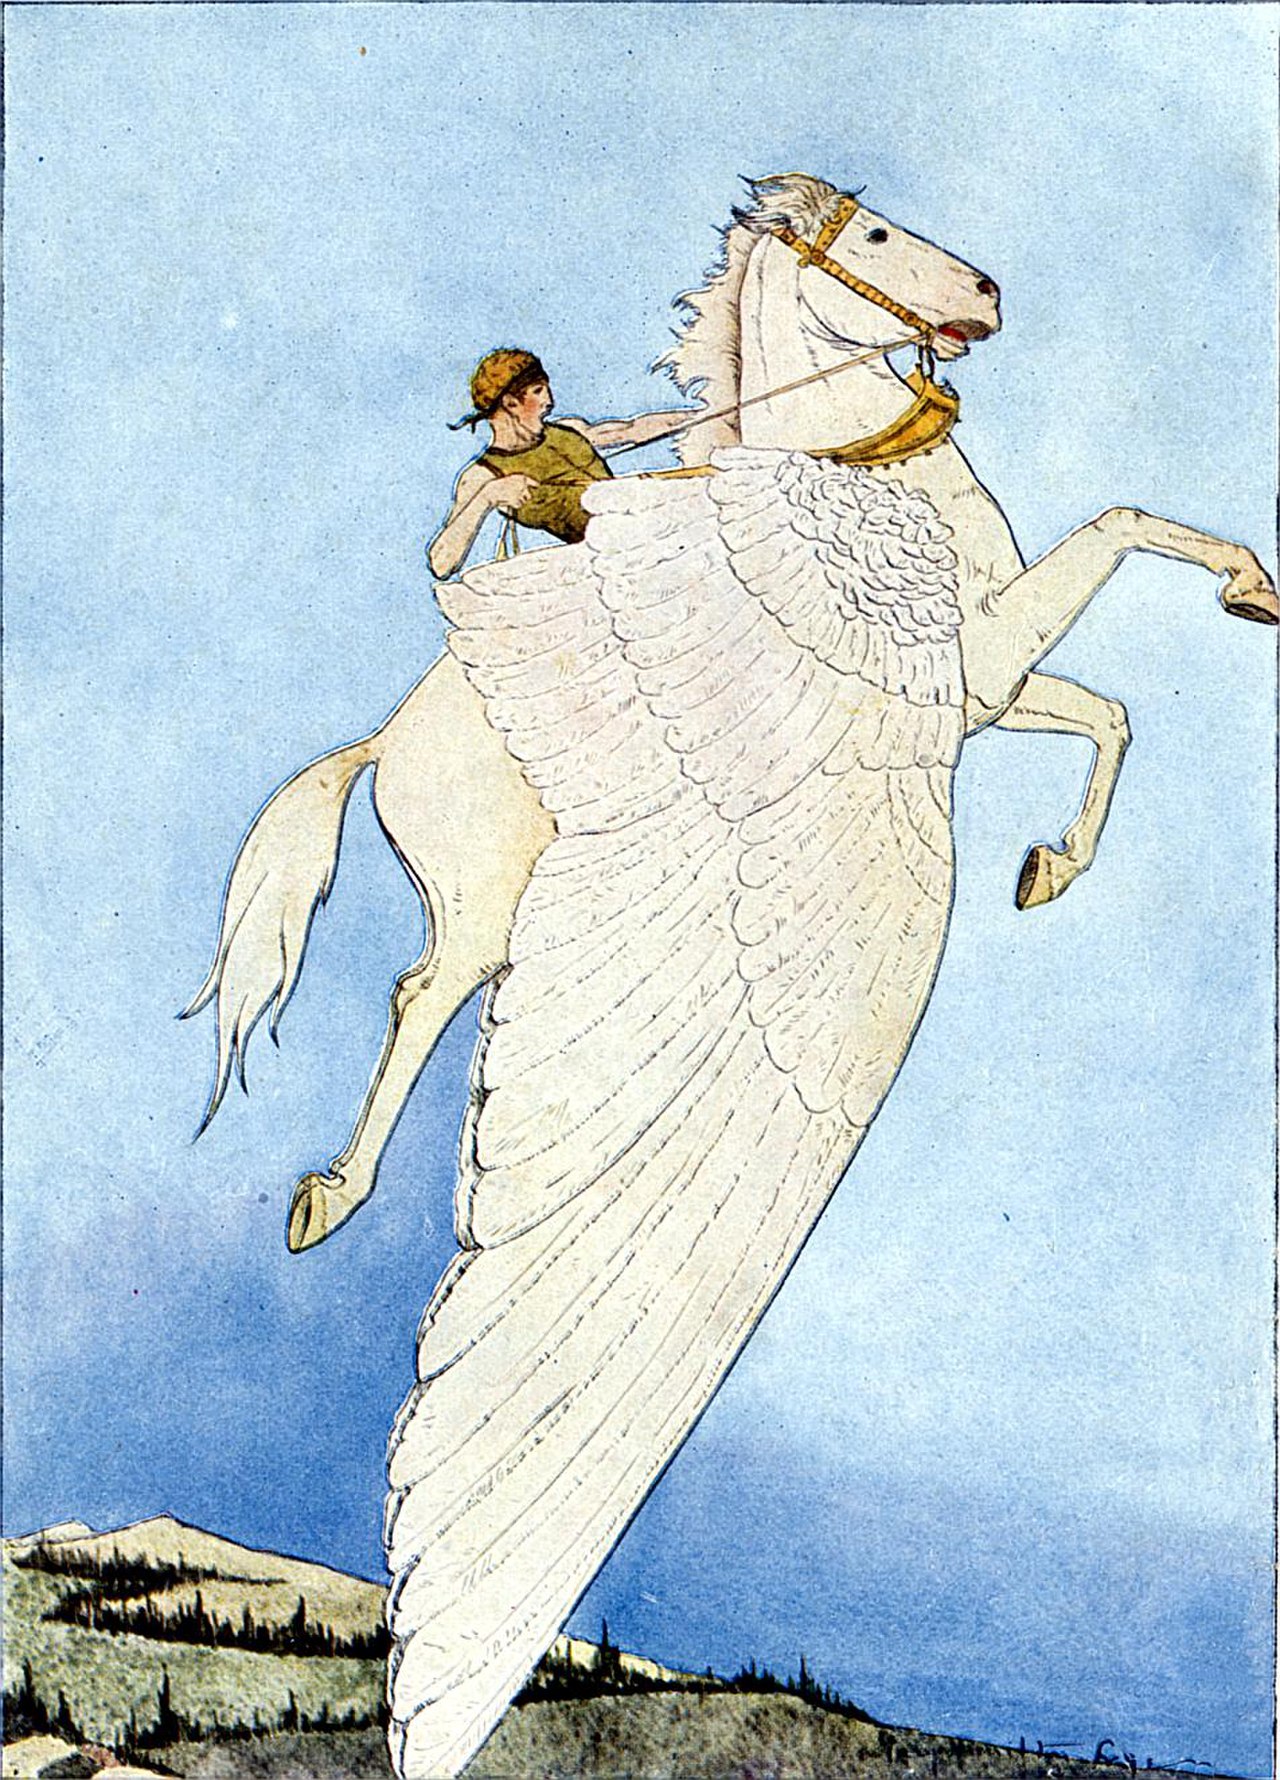 حيوان اسطوري يشبه الحصان